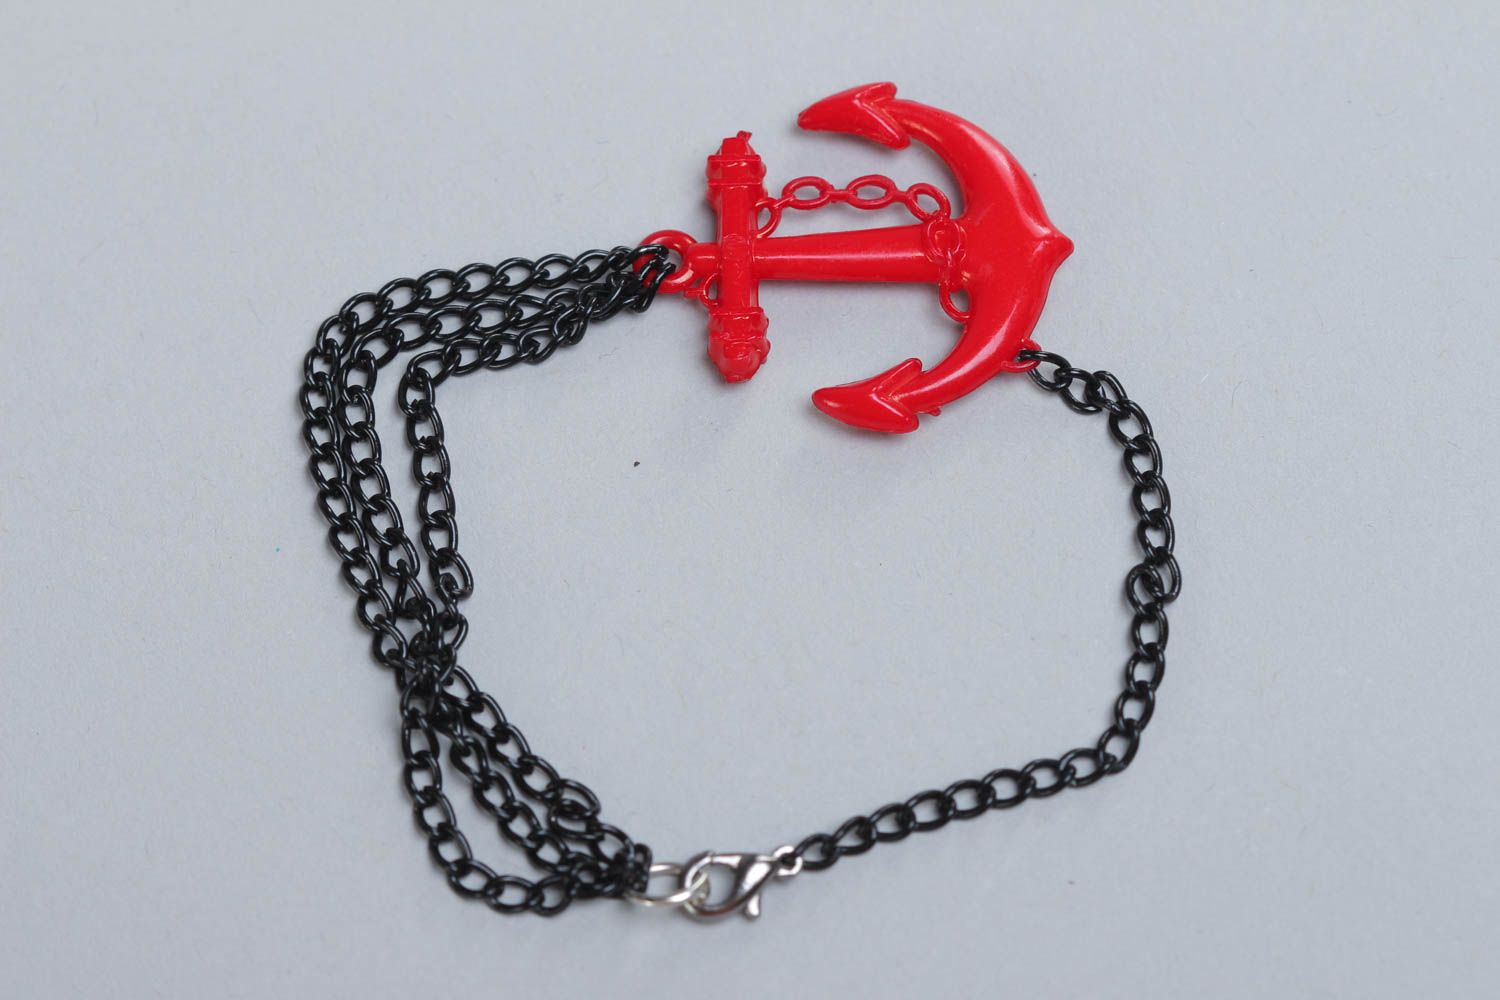 Наручный браслет из металла и пластика ручной работы красный с черным нарядный фото 2